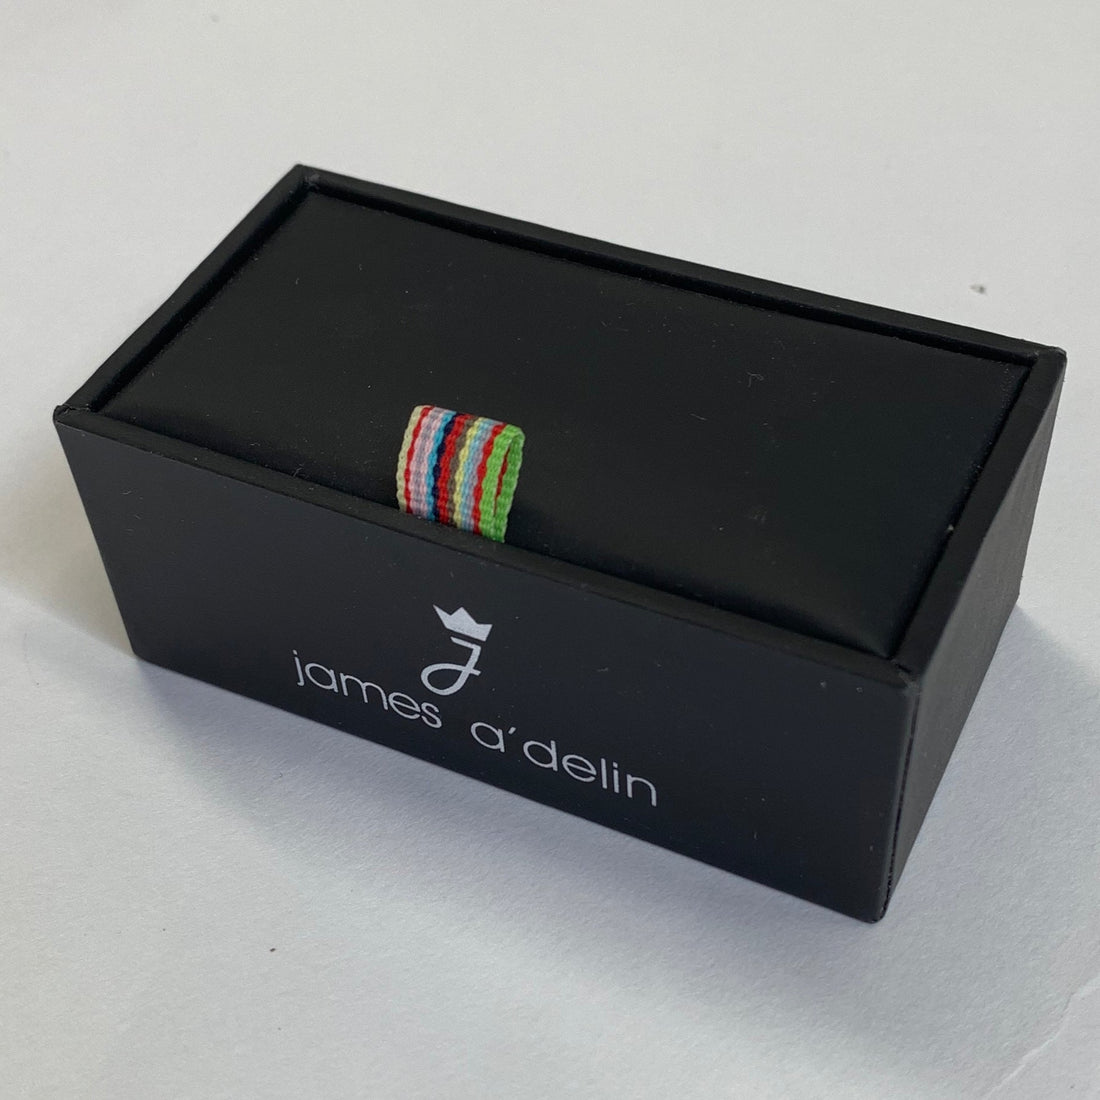 tie clip gift box in black 